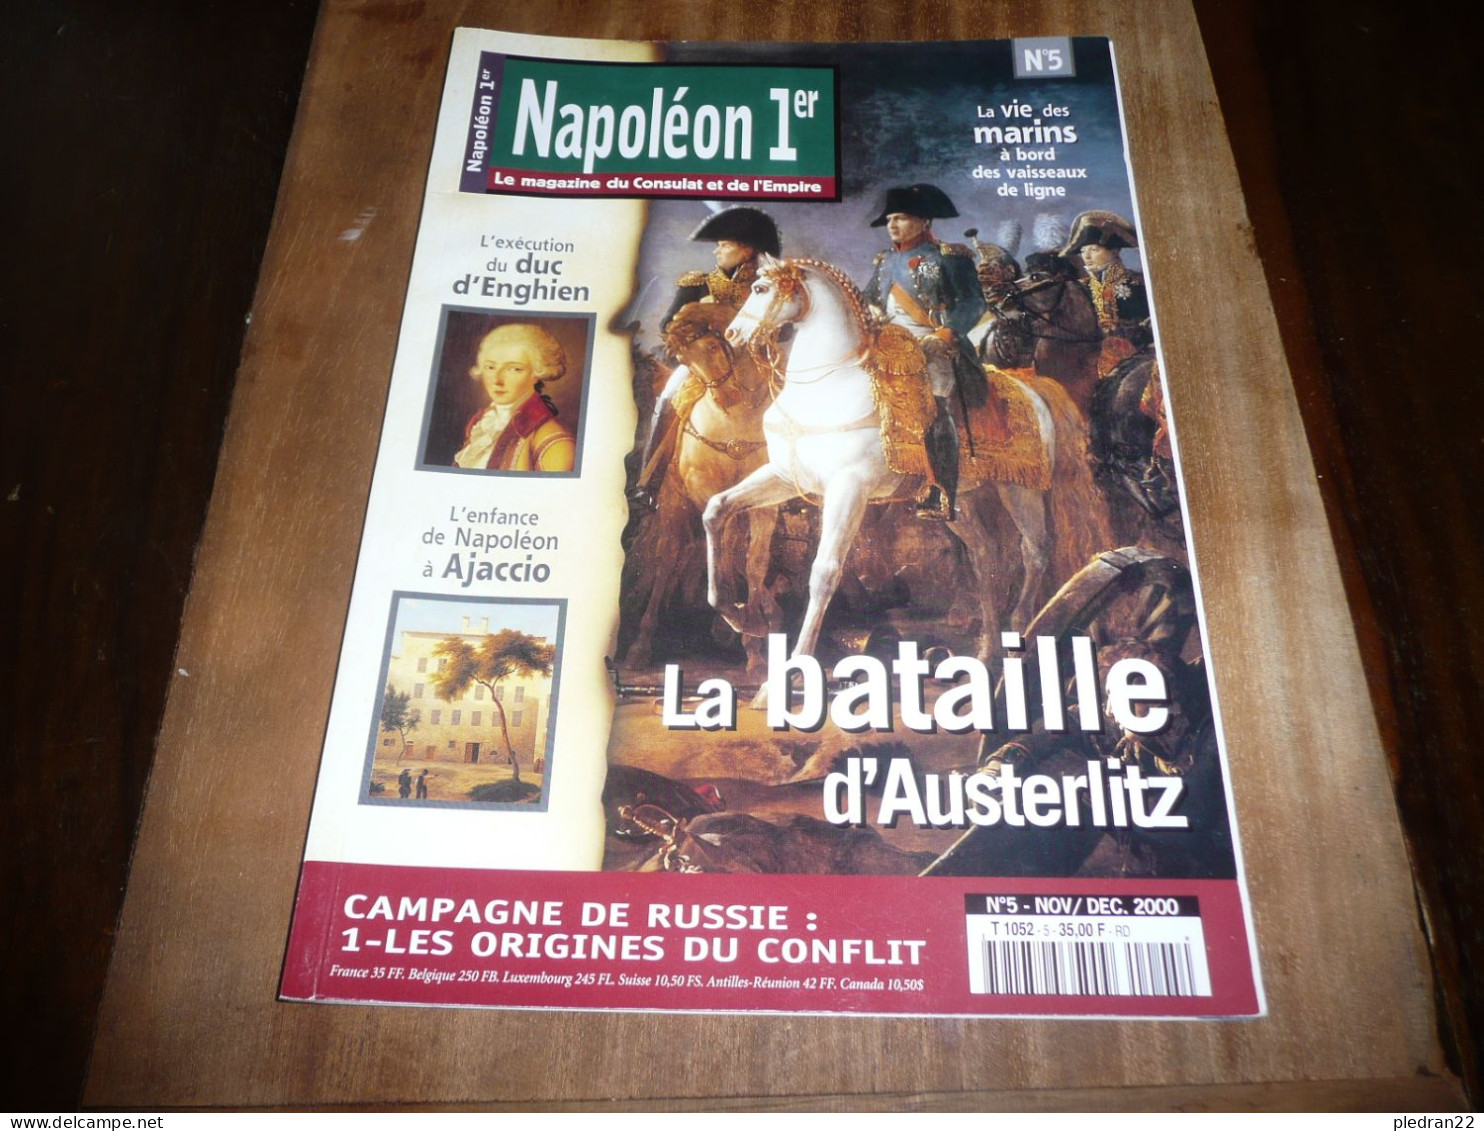 REVUE NAPOLEON 1er LE MAGAZINE DU CONSULAT ET DE L'EMPIRE N° 5 NOVEMBRE DECEMBRE 2000 - Geschiedenis